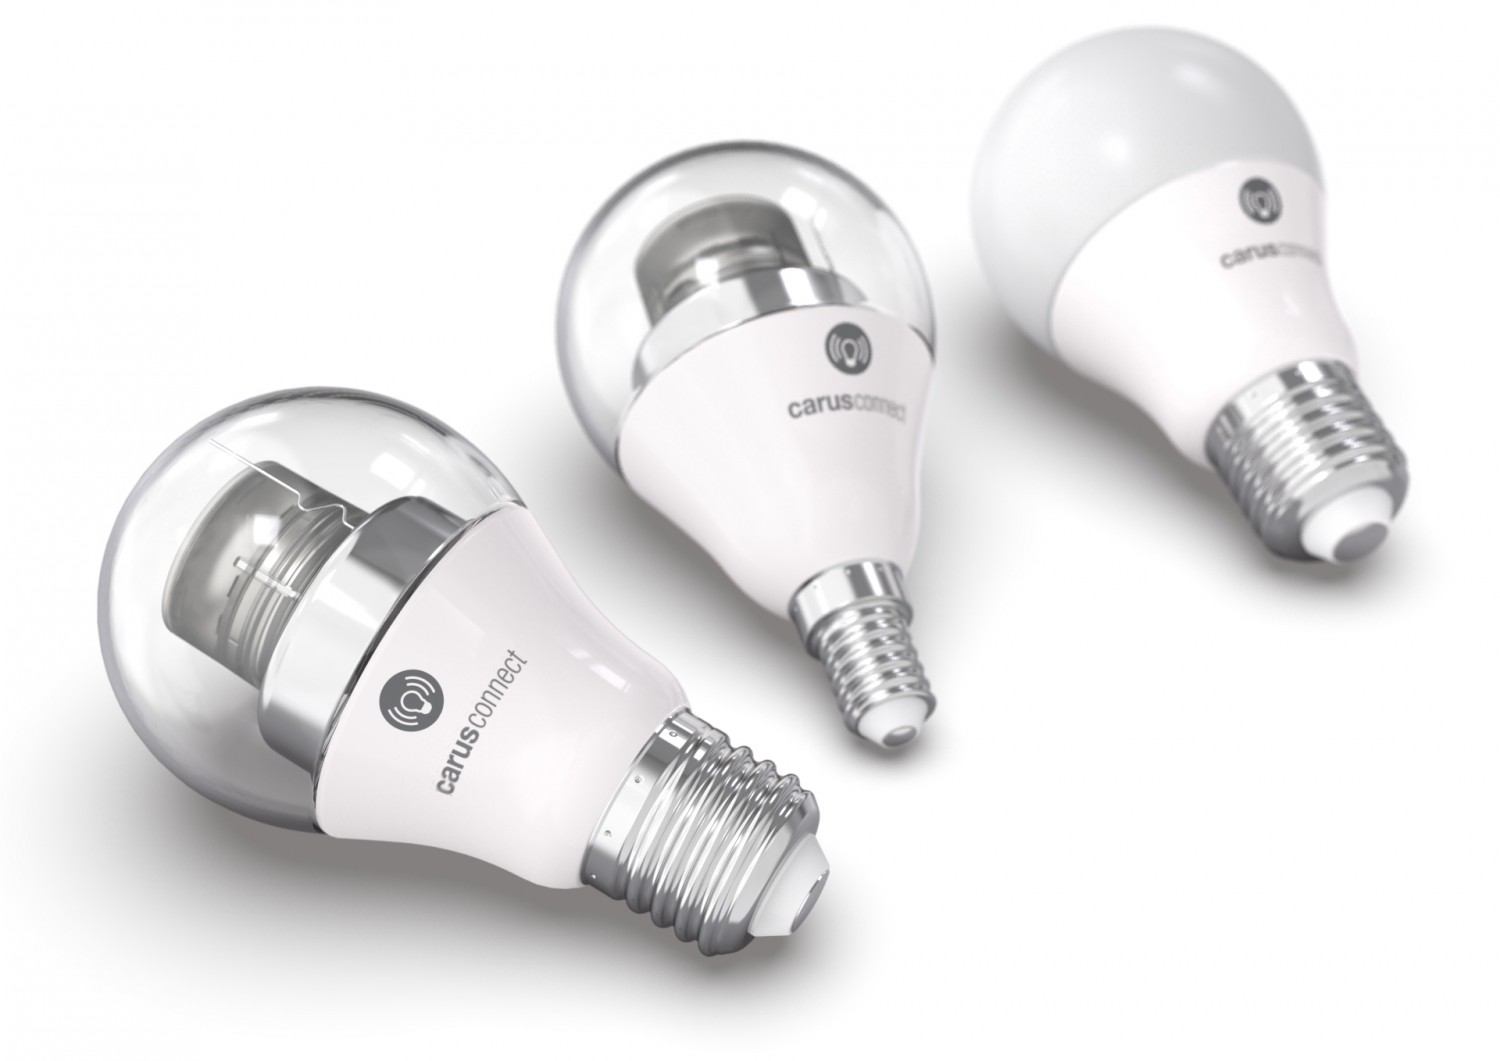 Smart Home Full-Color-LED-Lampe von Carus für das intelligente Zuhause - Steuerung per Bluetooth - News, Bild 1